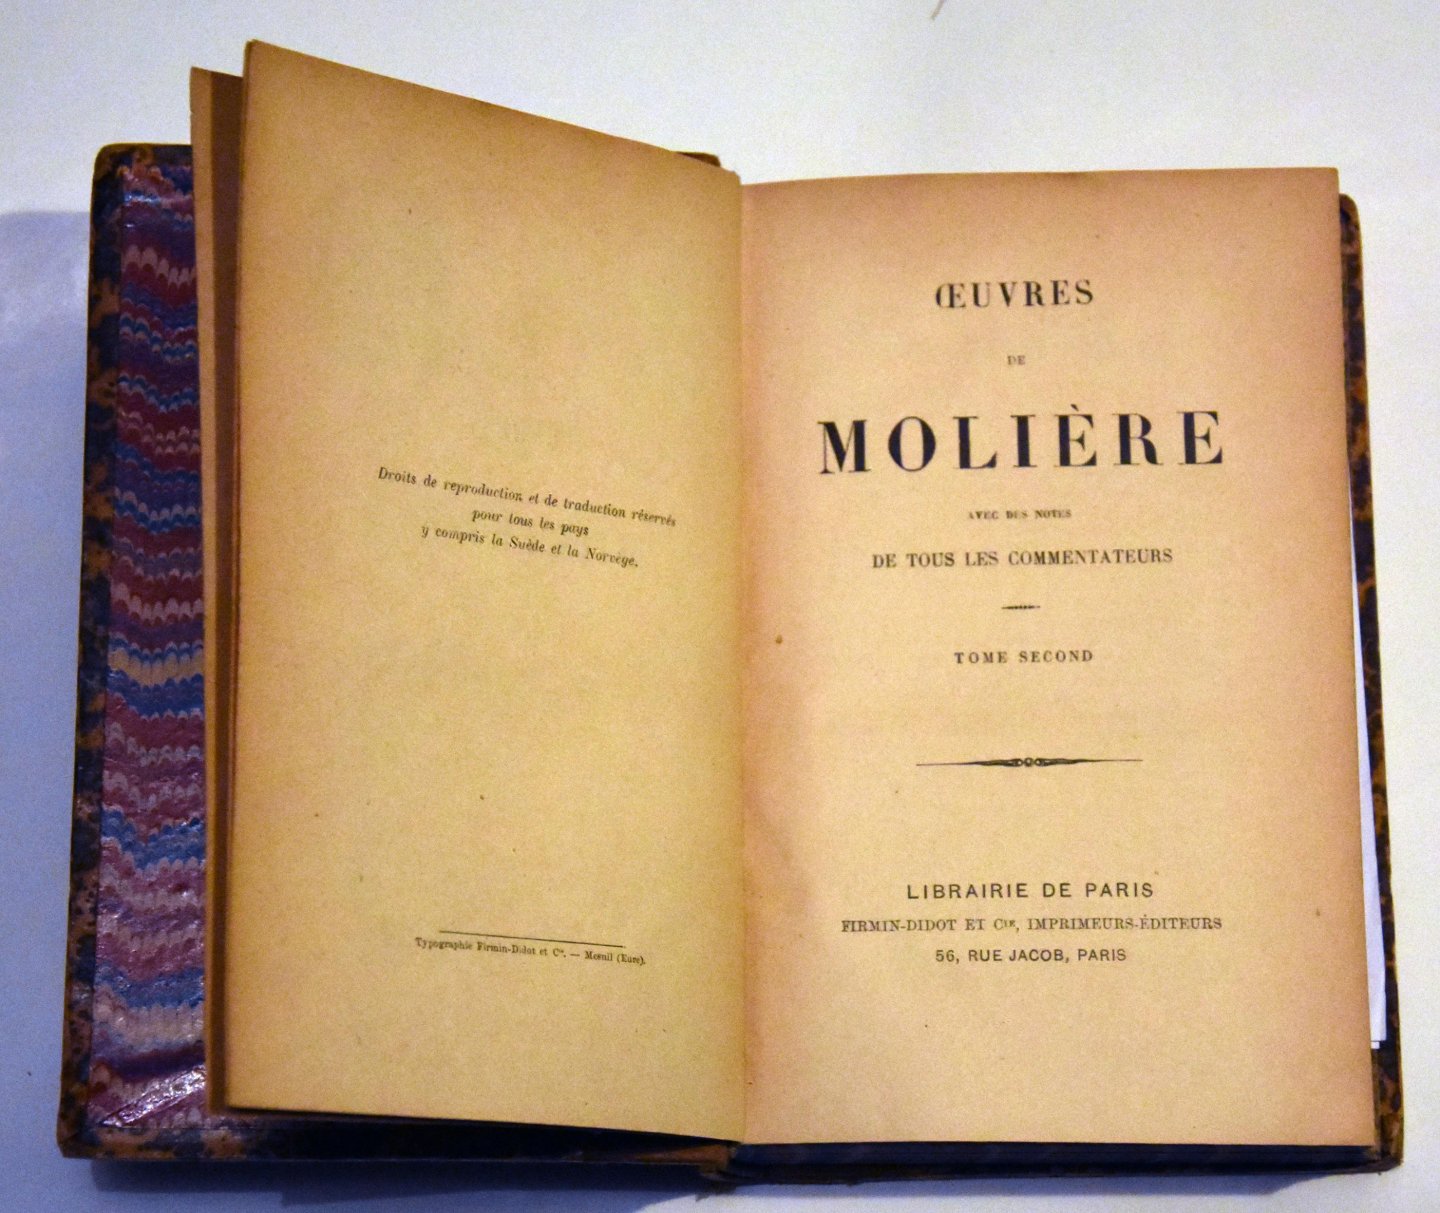 Molière - Oeuvres de Molière - avec des notes de tous les commentateurs Tome I & II (2 volumes)